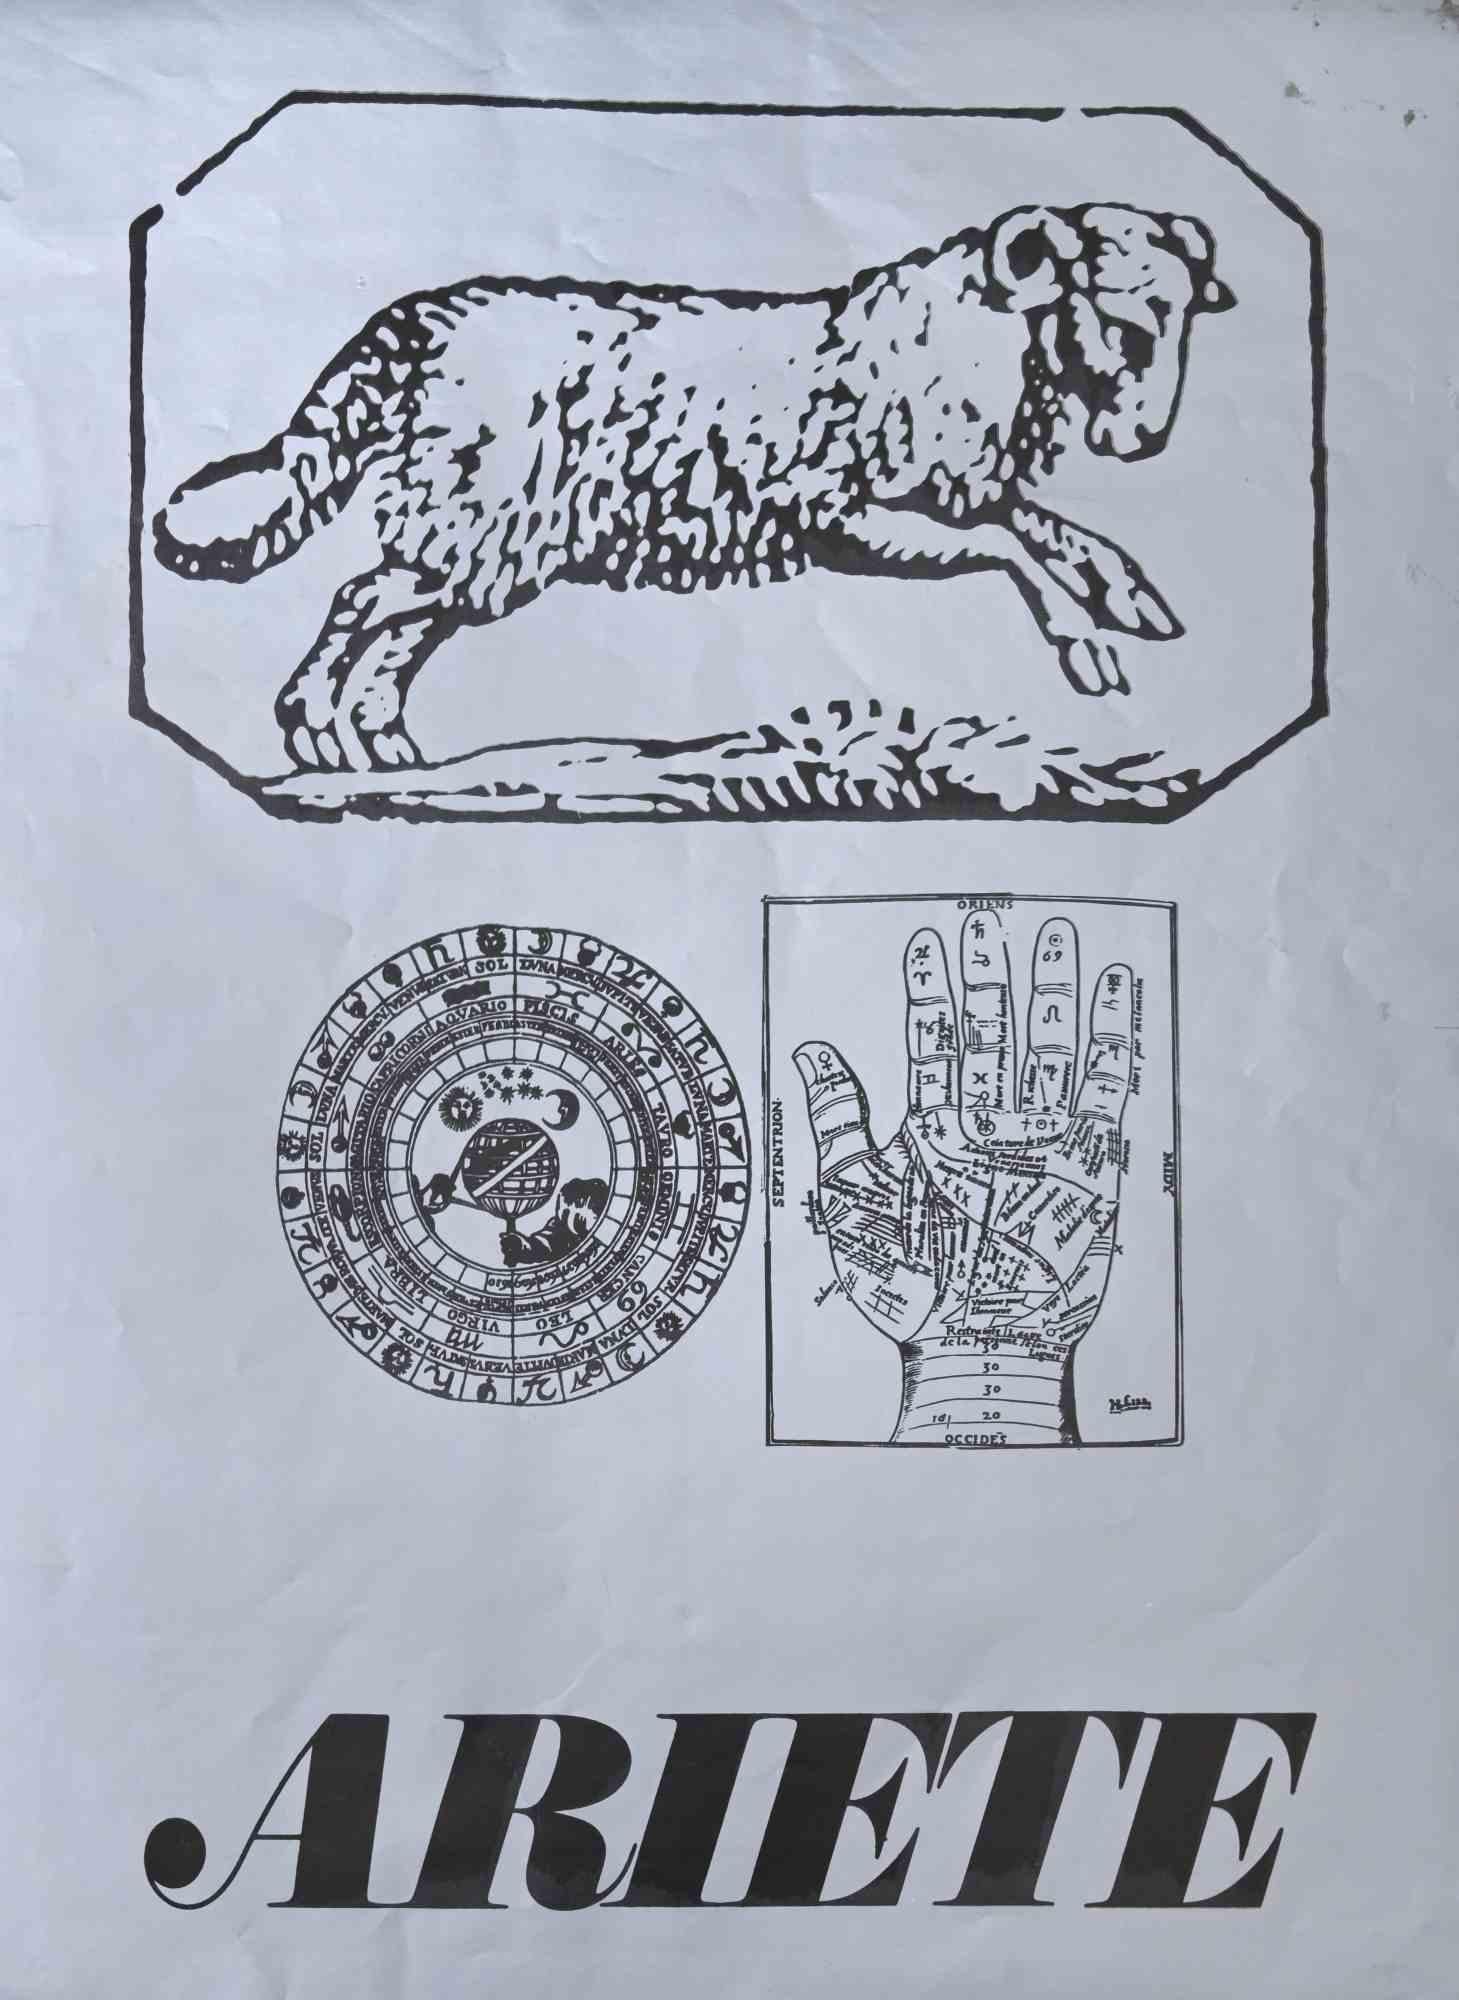 Aris est une sérigraphie sur papier gris réalisée par Sergio Barletta en 1973. 

68 x 50 cm.

Bon état à l'exception de quelques traces de l'époque sur les marges.

Sergio Barletta  (1934) est un dessinateur et illustrateur italien qui a également